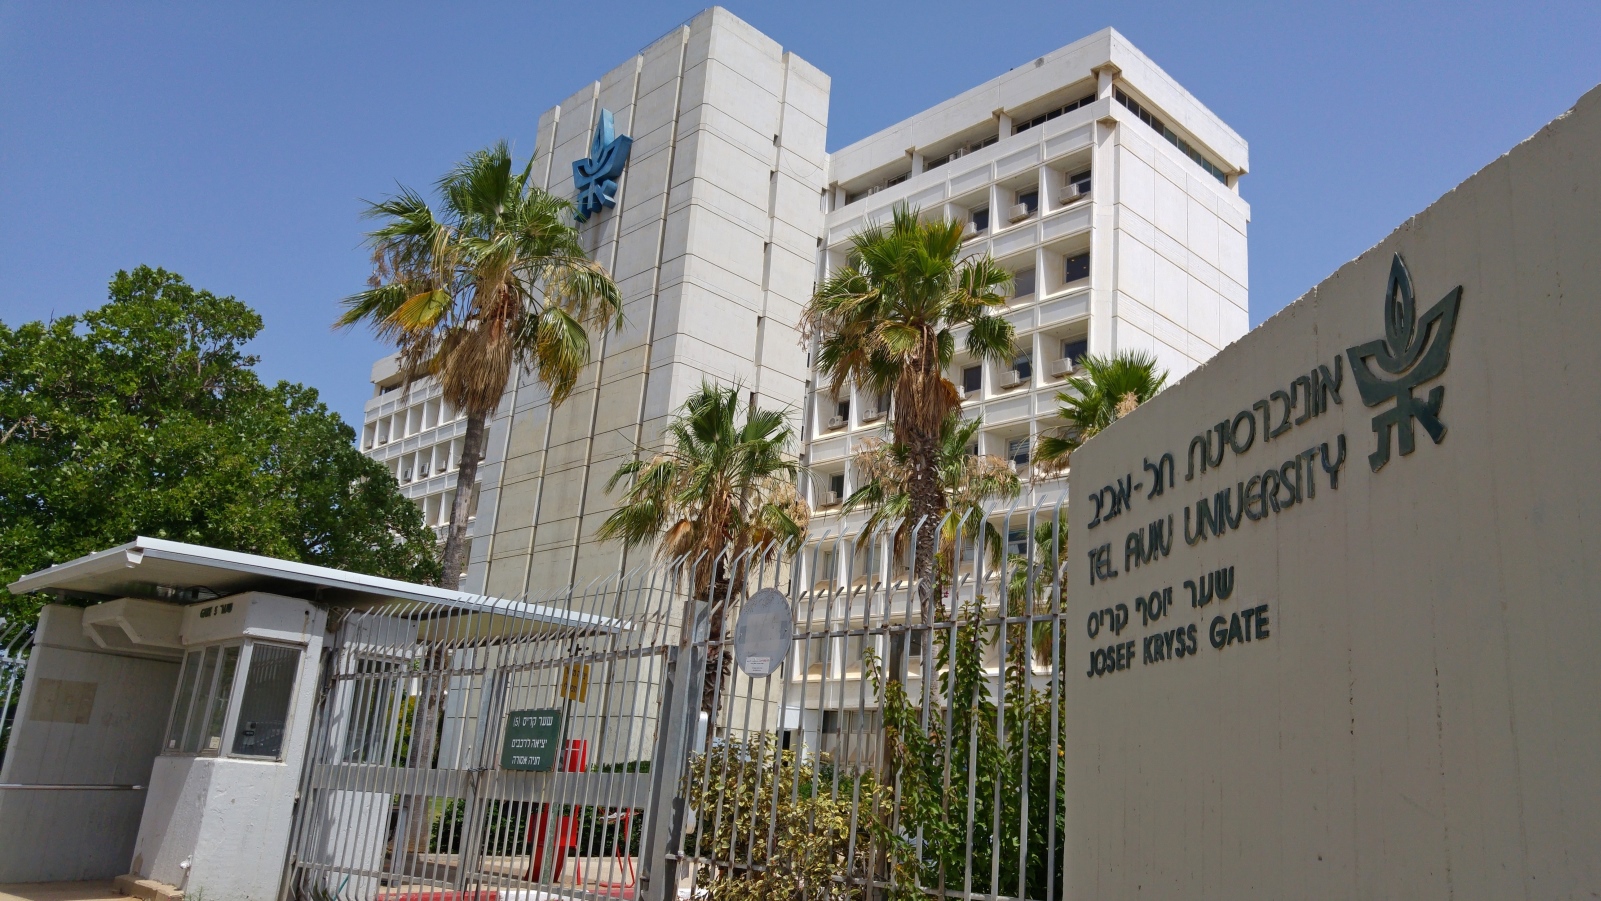 Photo of a Tel Aviv University building by Roman Yanushevsky/Shutterstock.com